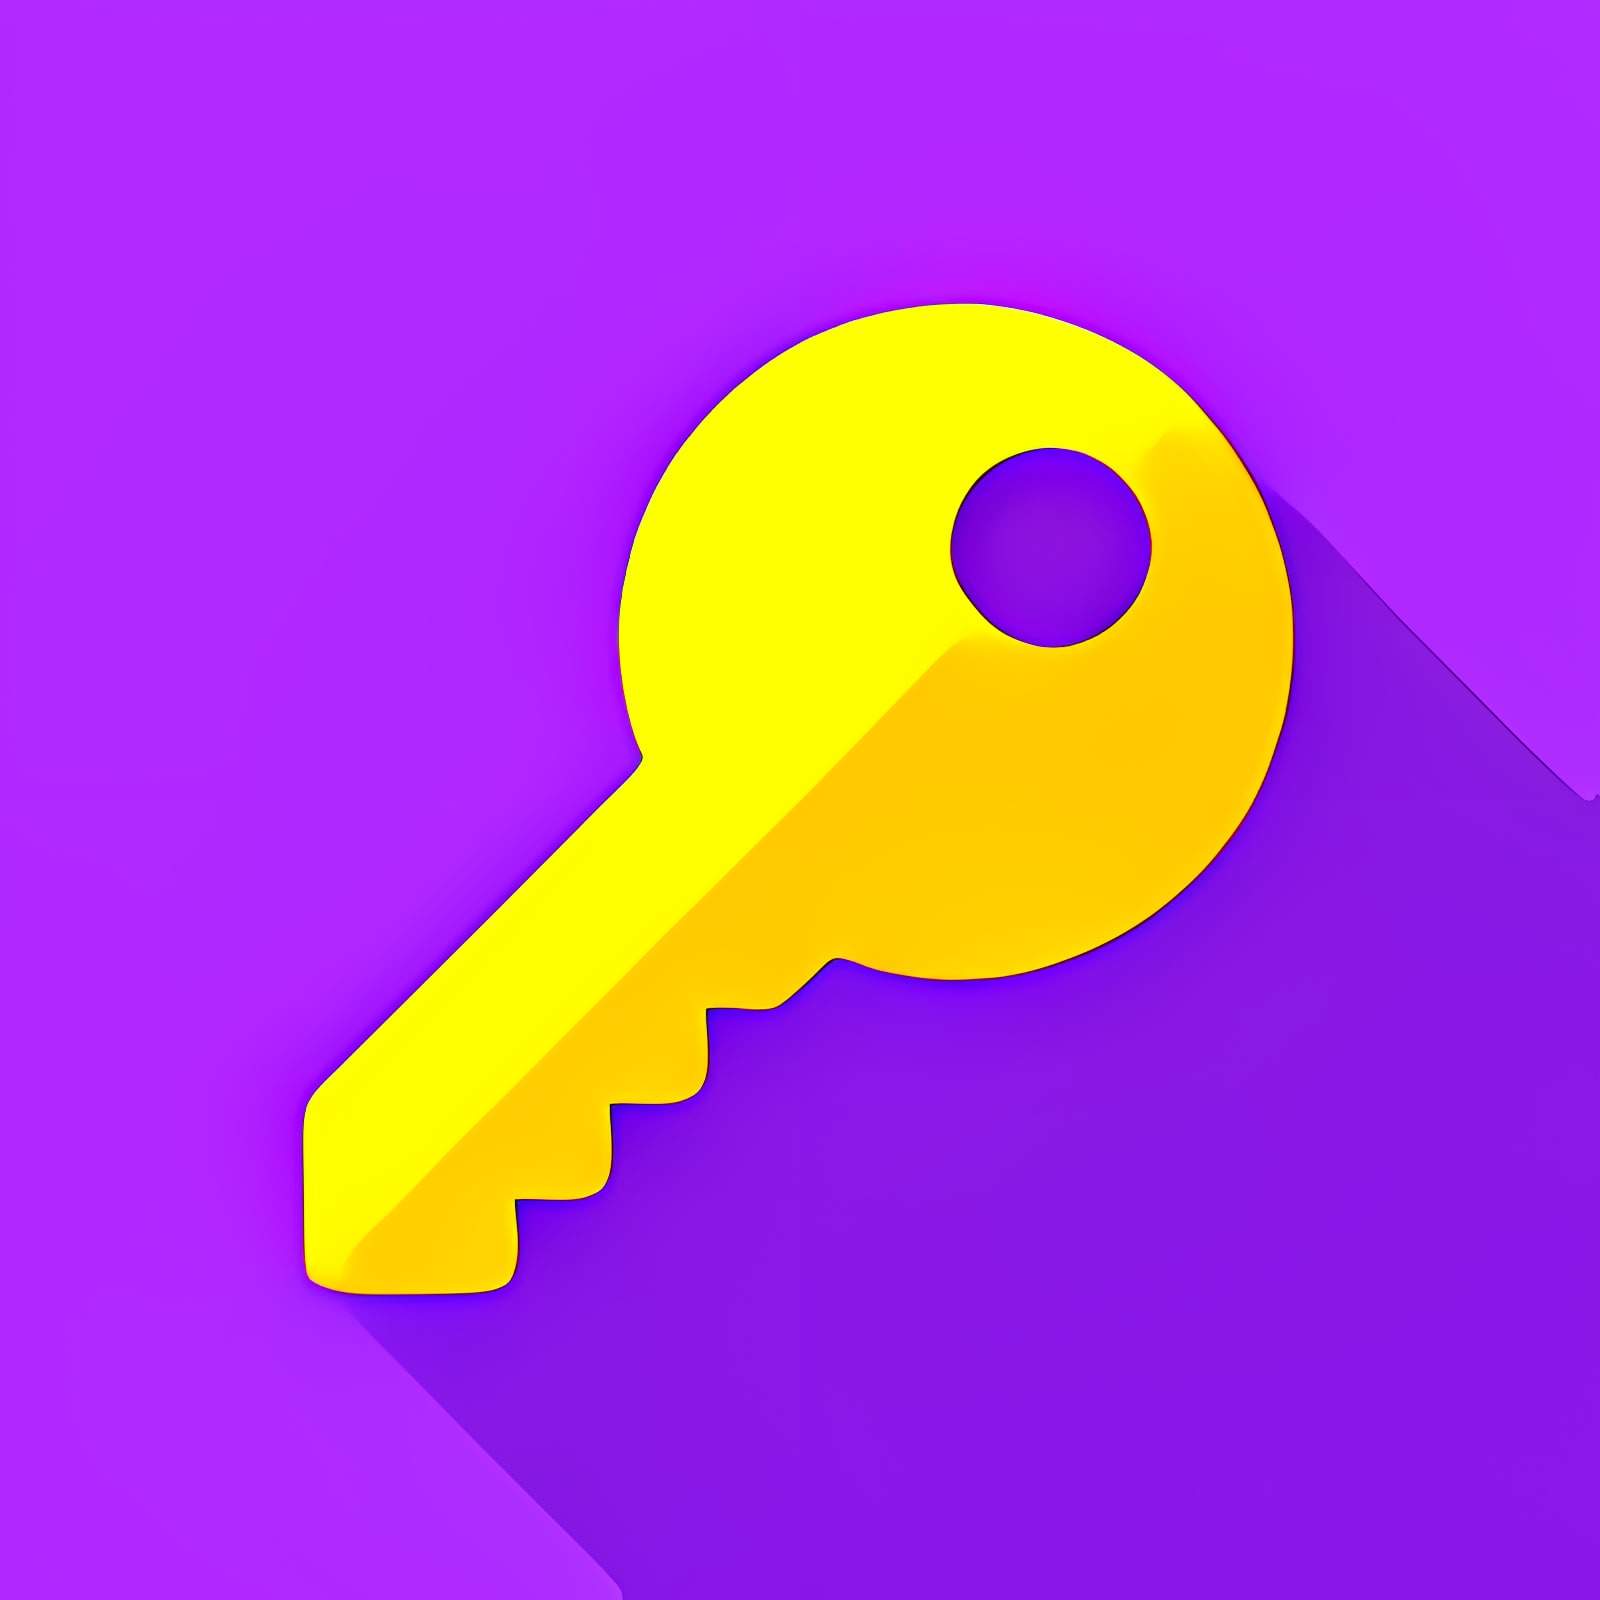 Herunterladen F-Secure Key Installieren Sie Neueste App Downloader